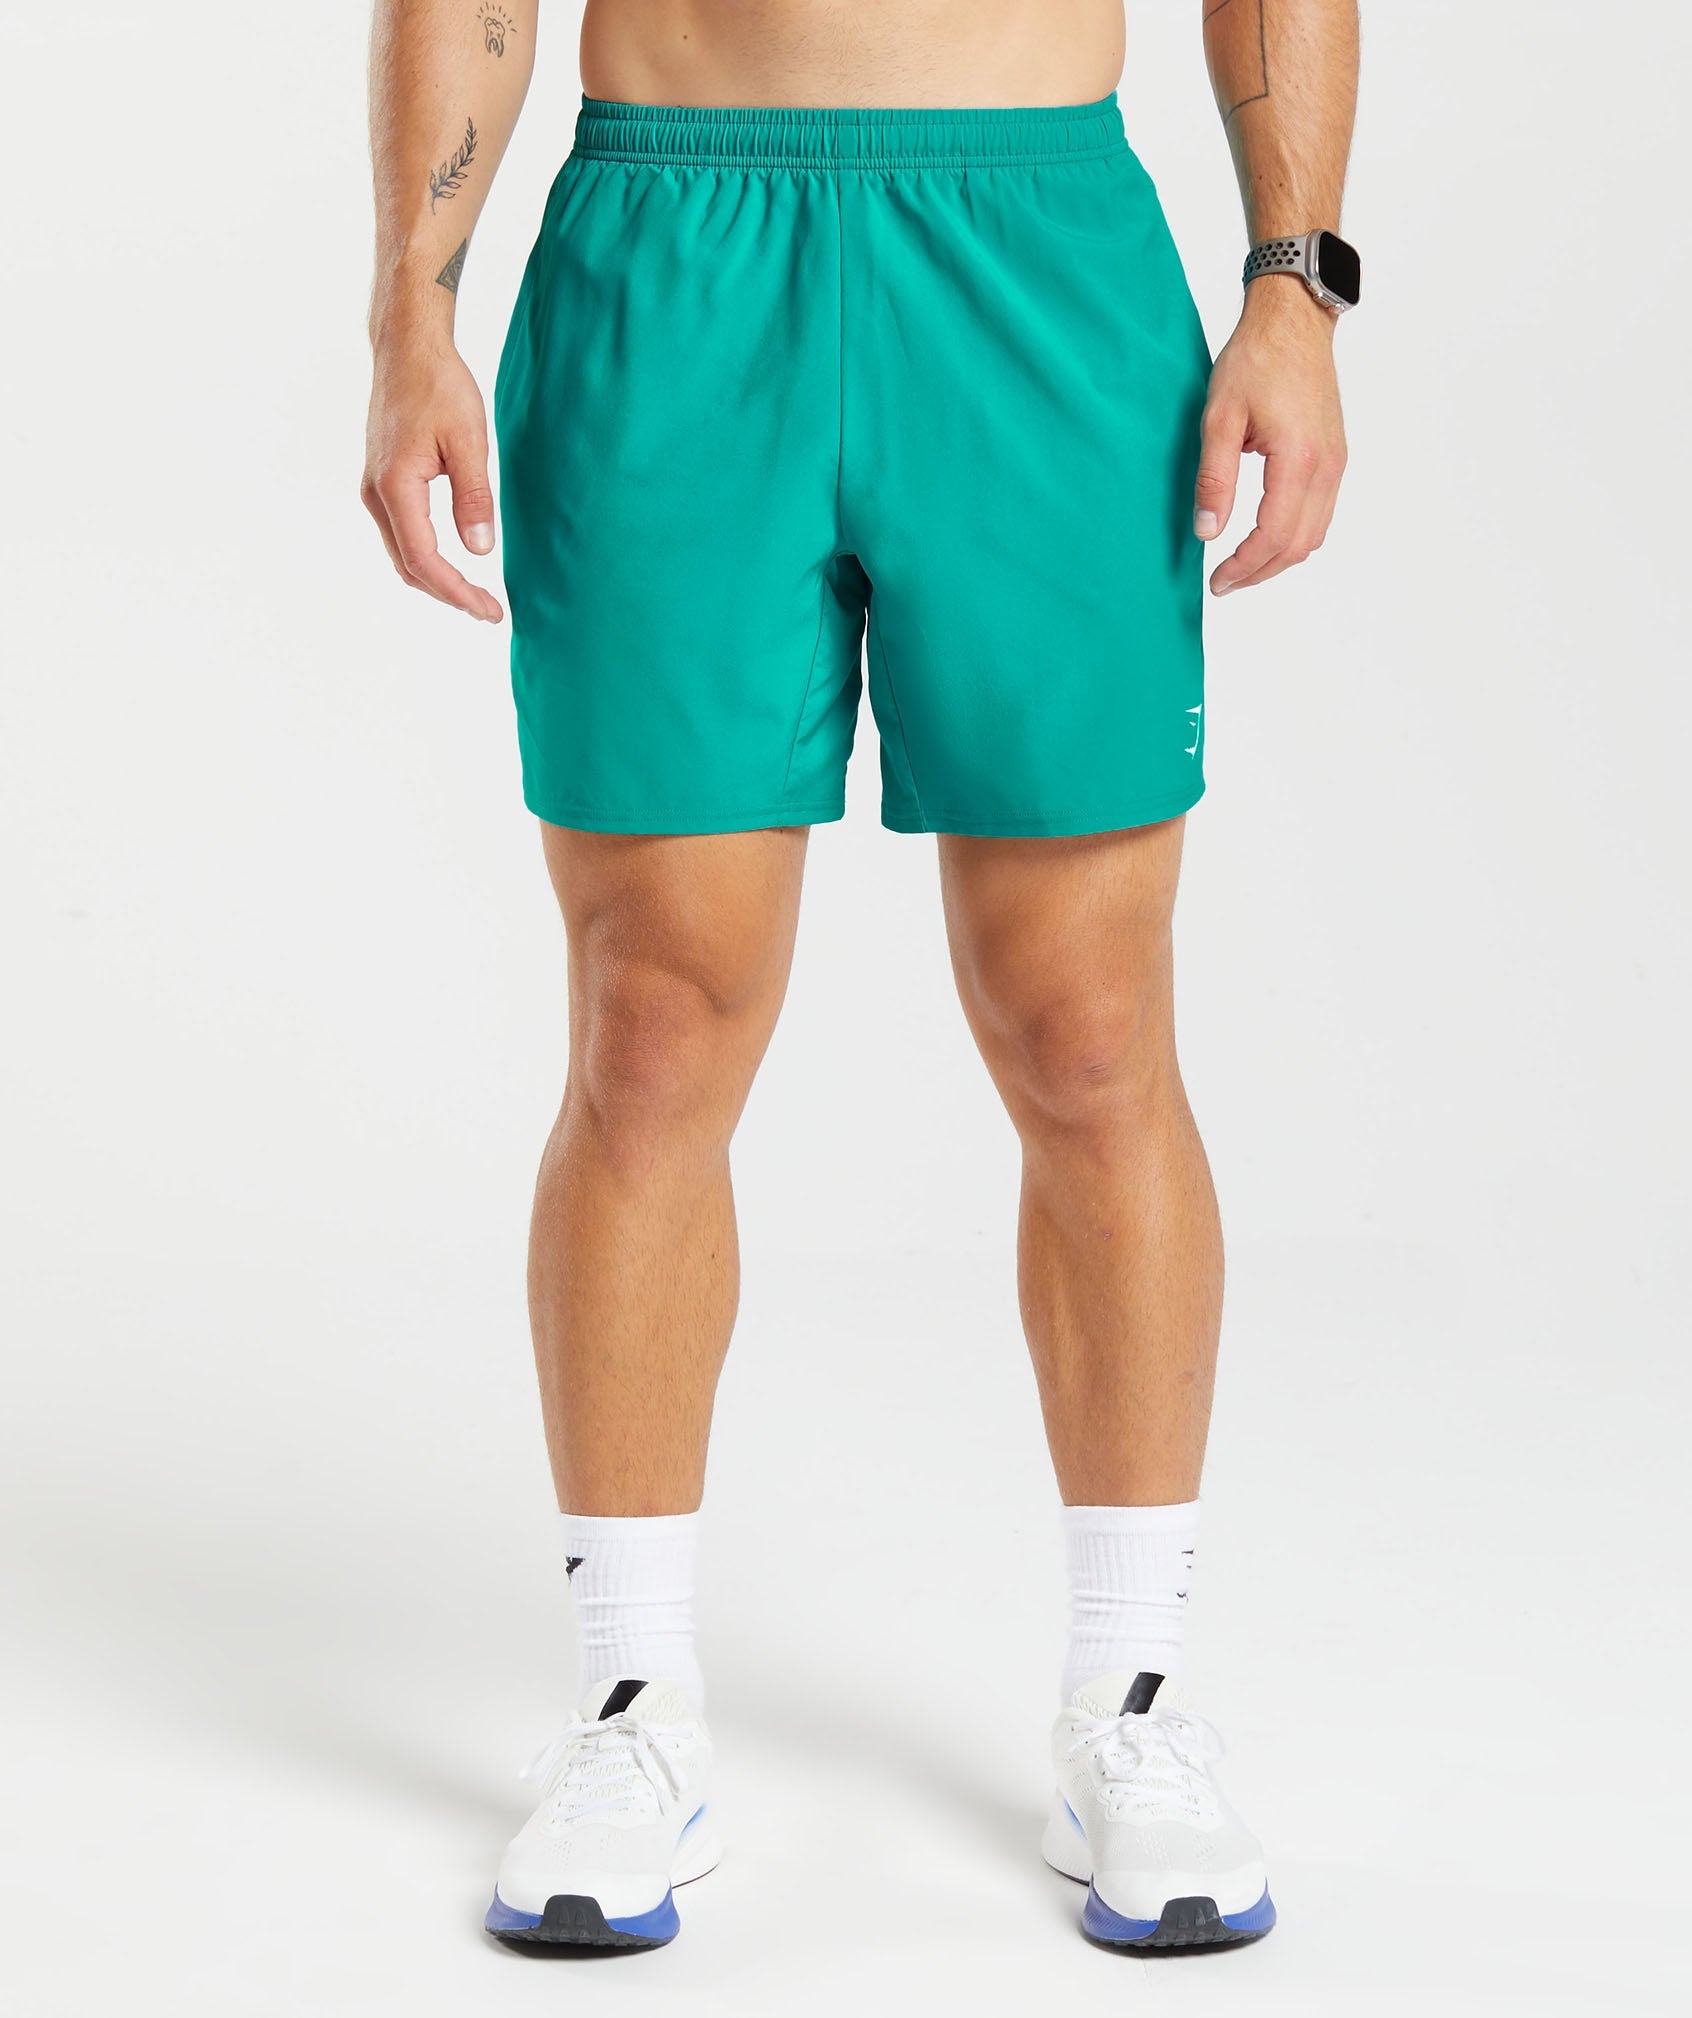 Gymshark Critical Shorts - 7” - Save 56%